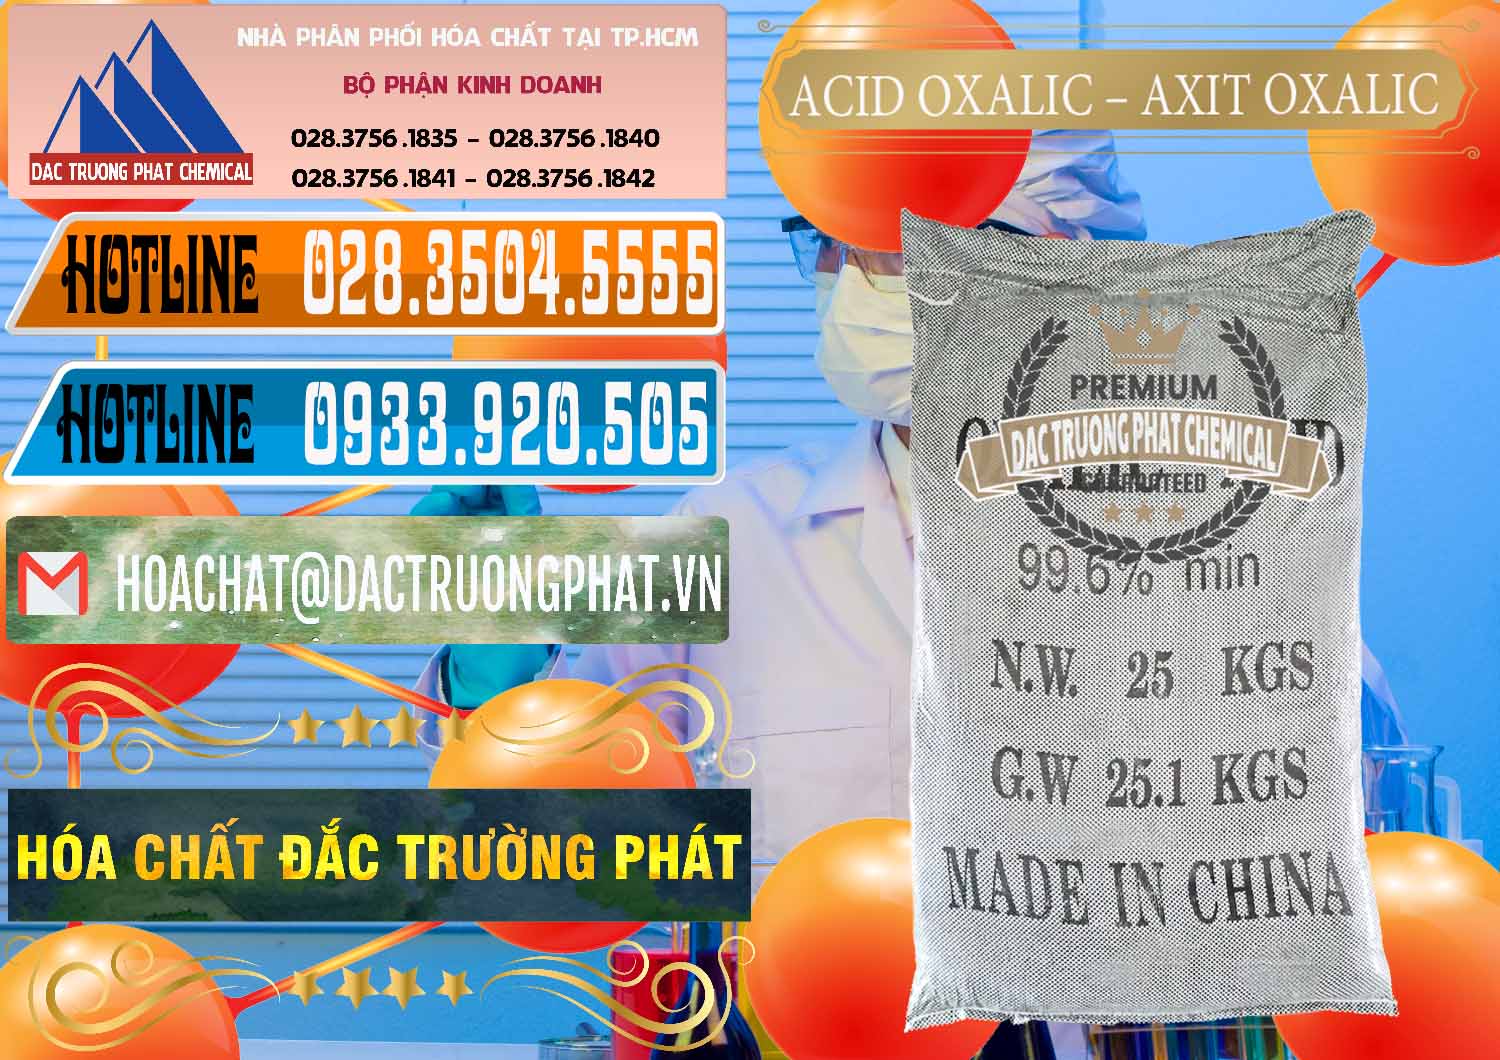 Nơi chuyên bán & cung cấp Acid Oxalic – Axit Oxalic 99.6% Trung Quốc China - 0014 - Nhà cung cấp - nhập khẩu hóa chất tại TP.HCM - stmp.net